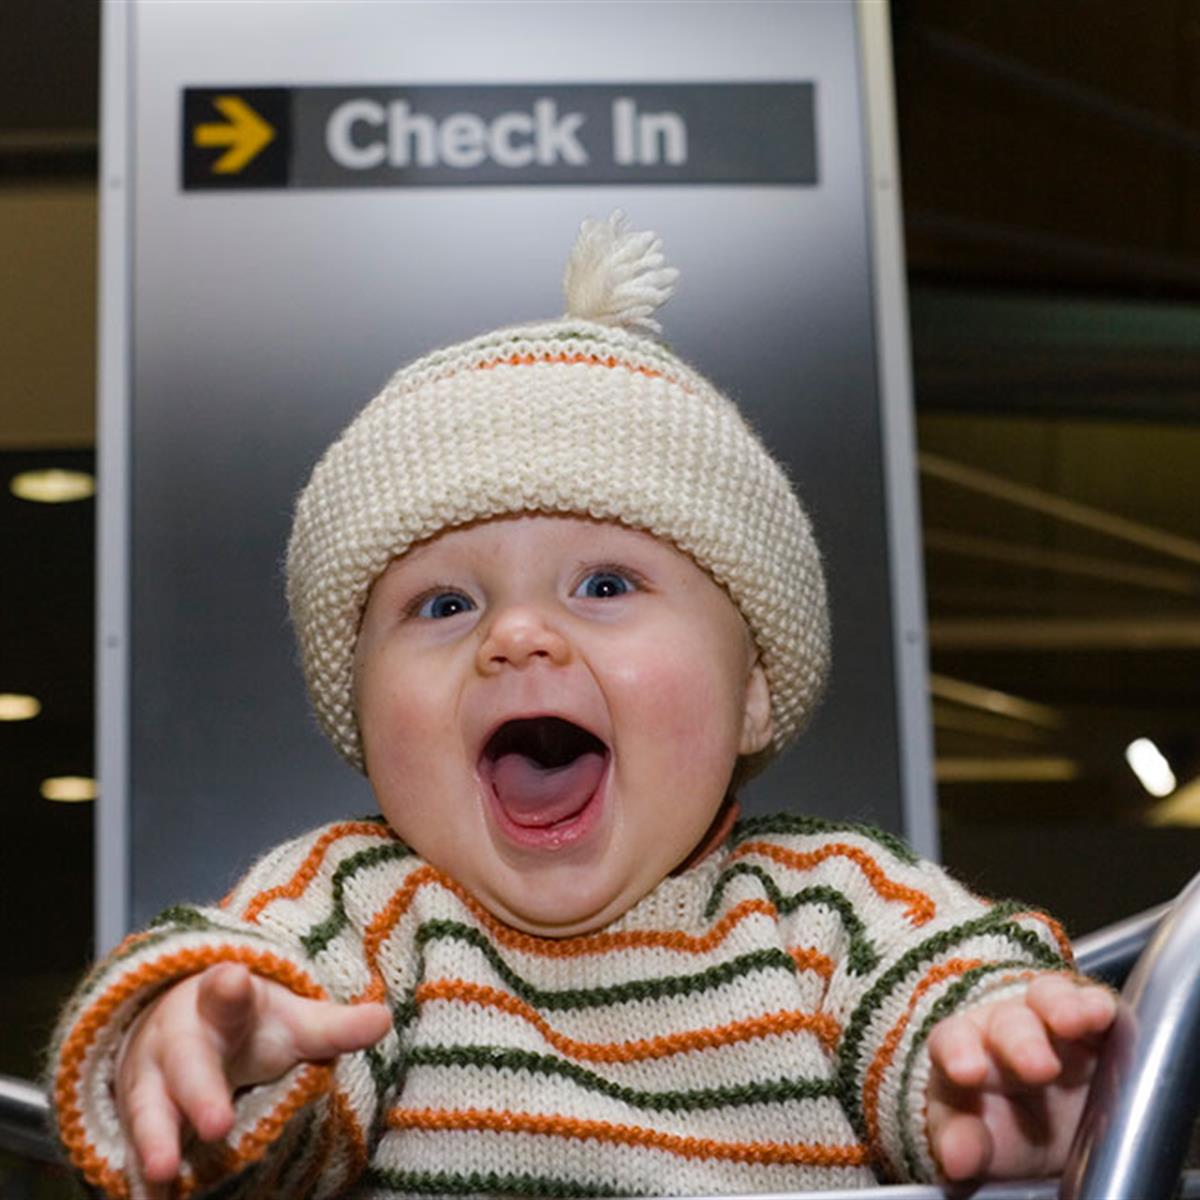 Vas a viajar con bebés en avión? ESTO es lo que me pasó a mi